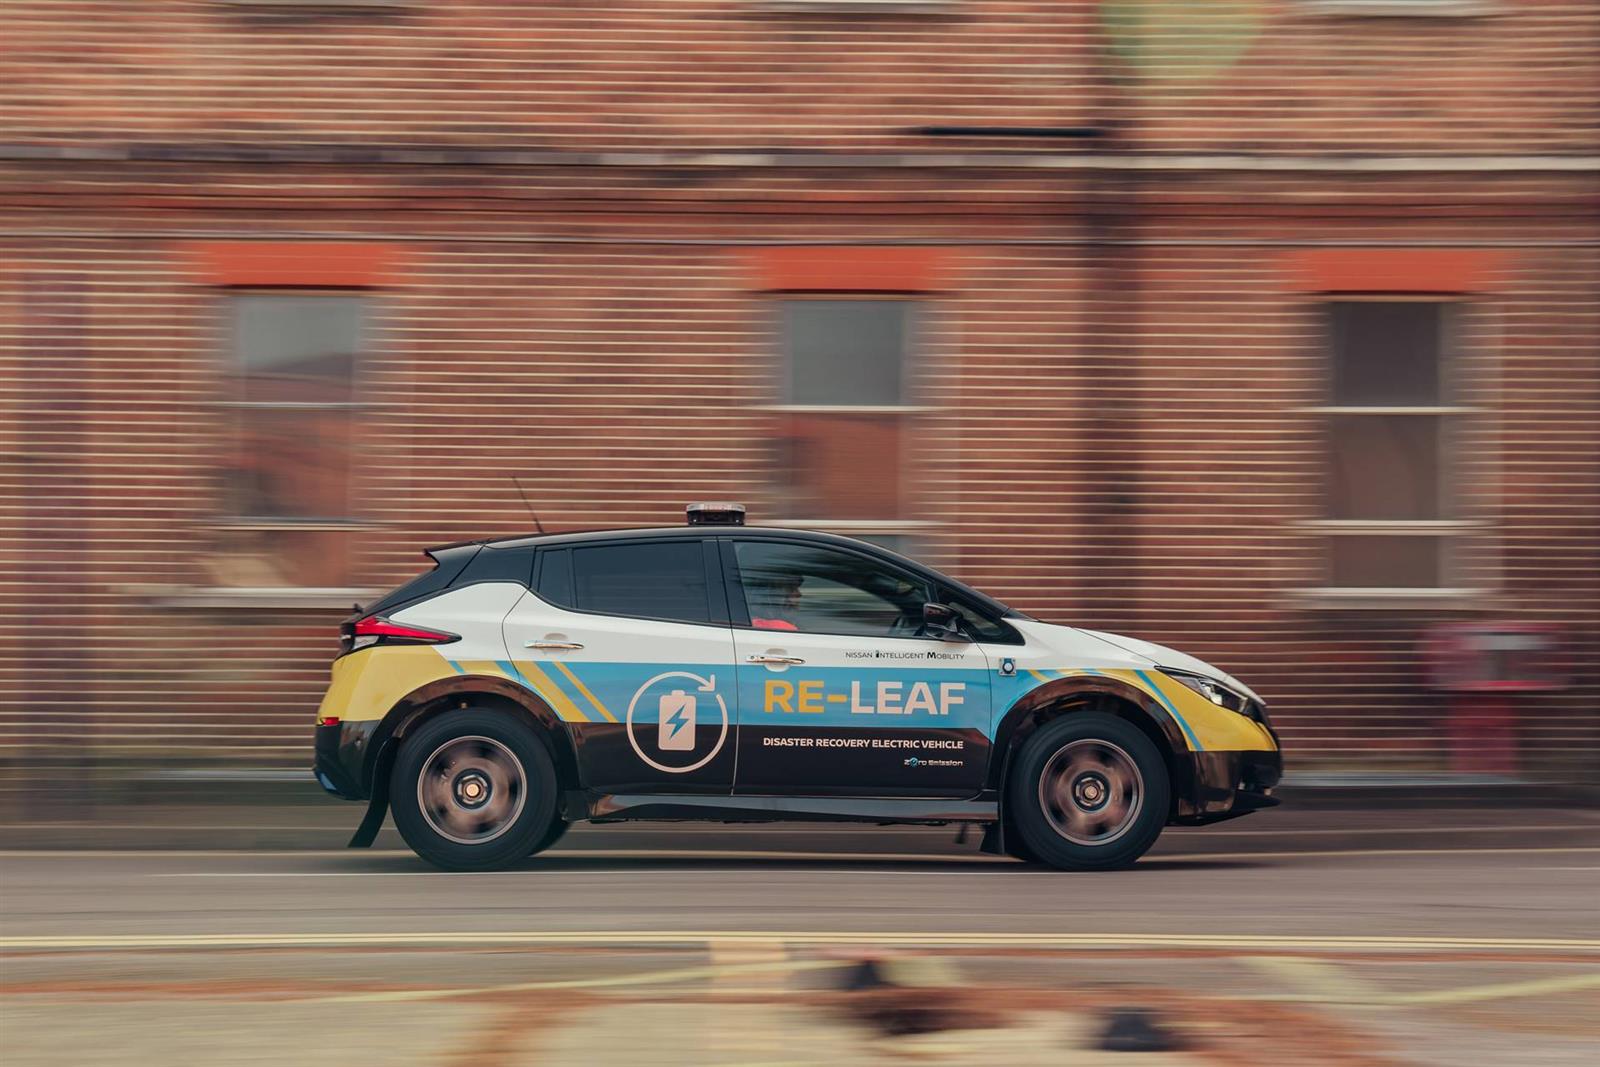 2020 Nissan RE-LEAF